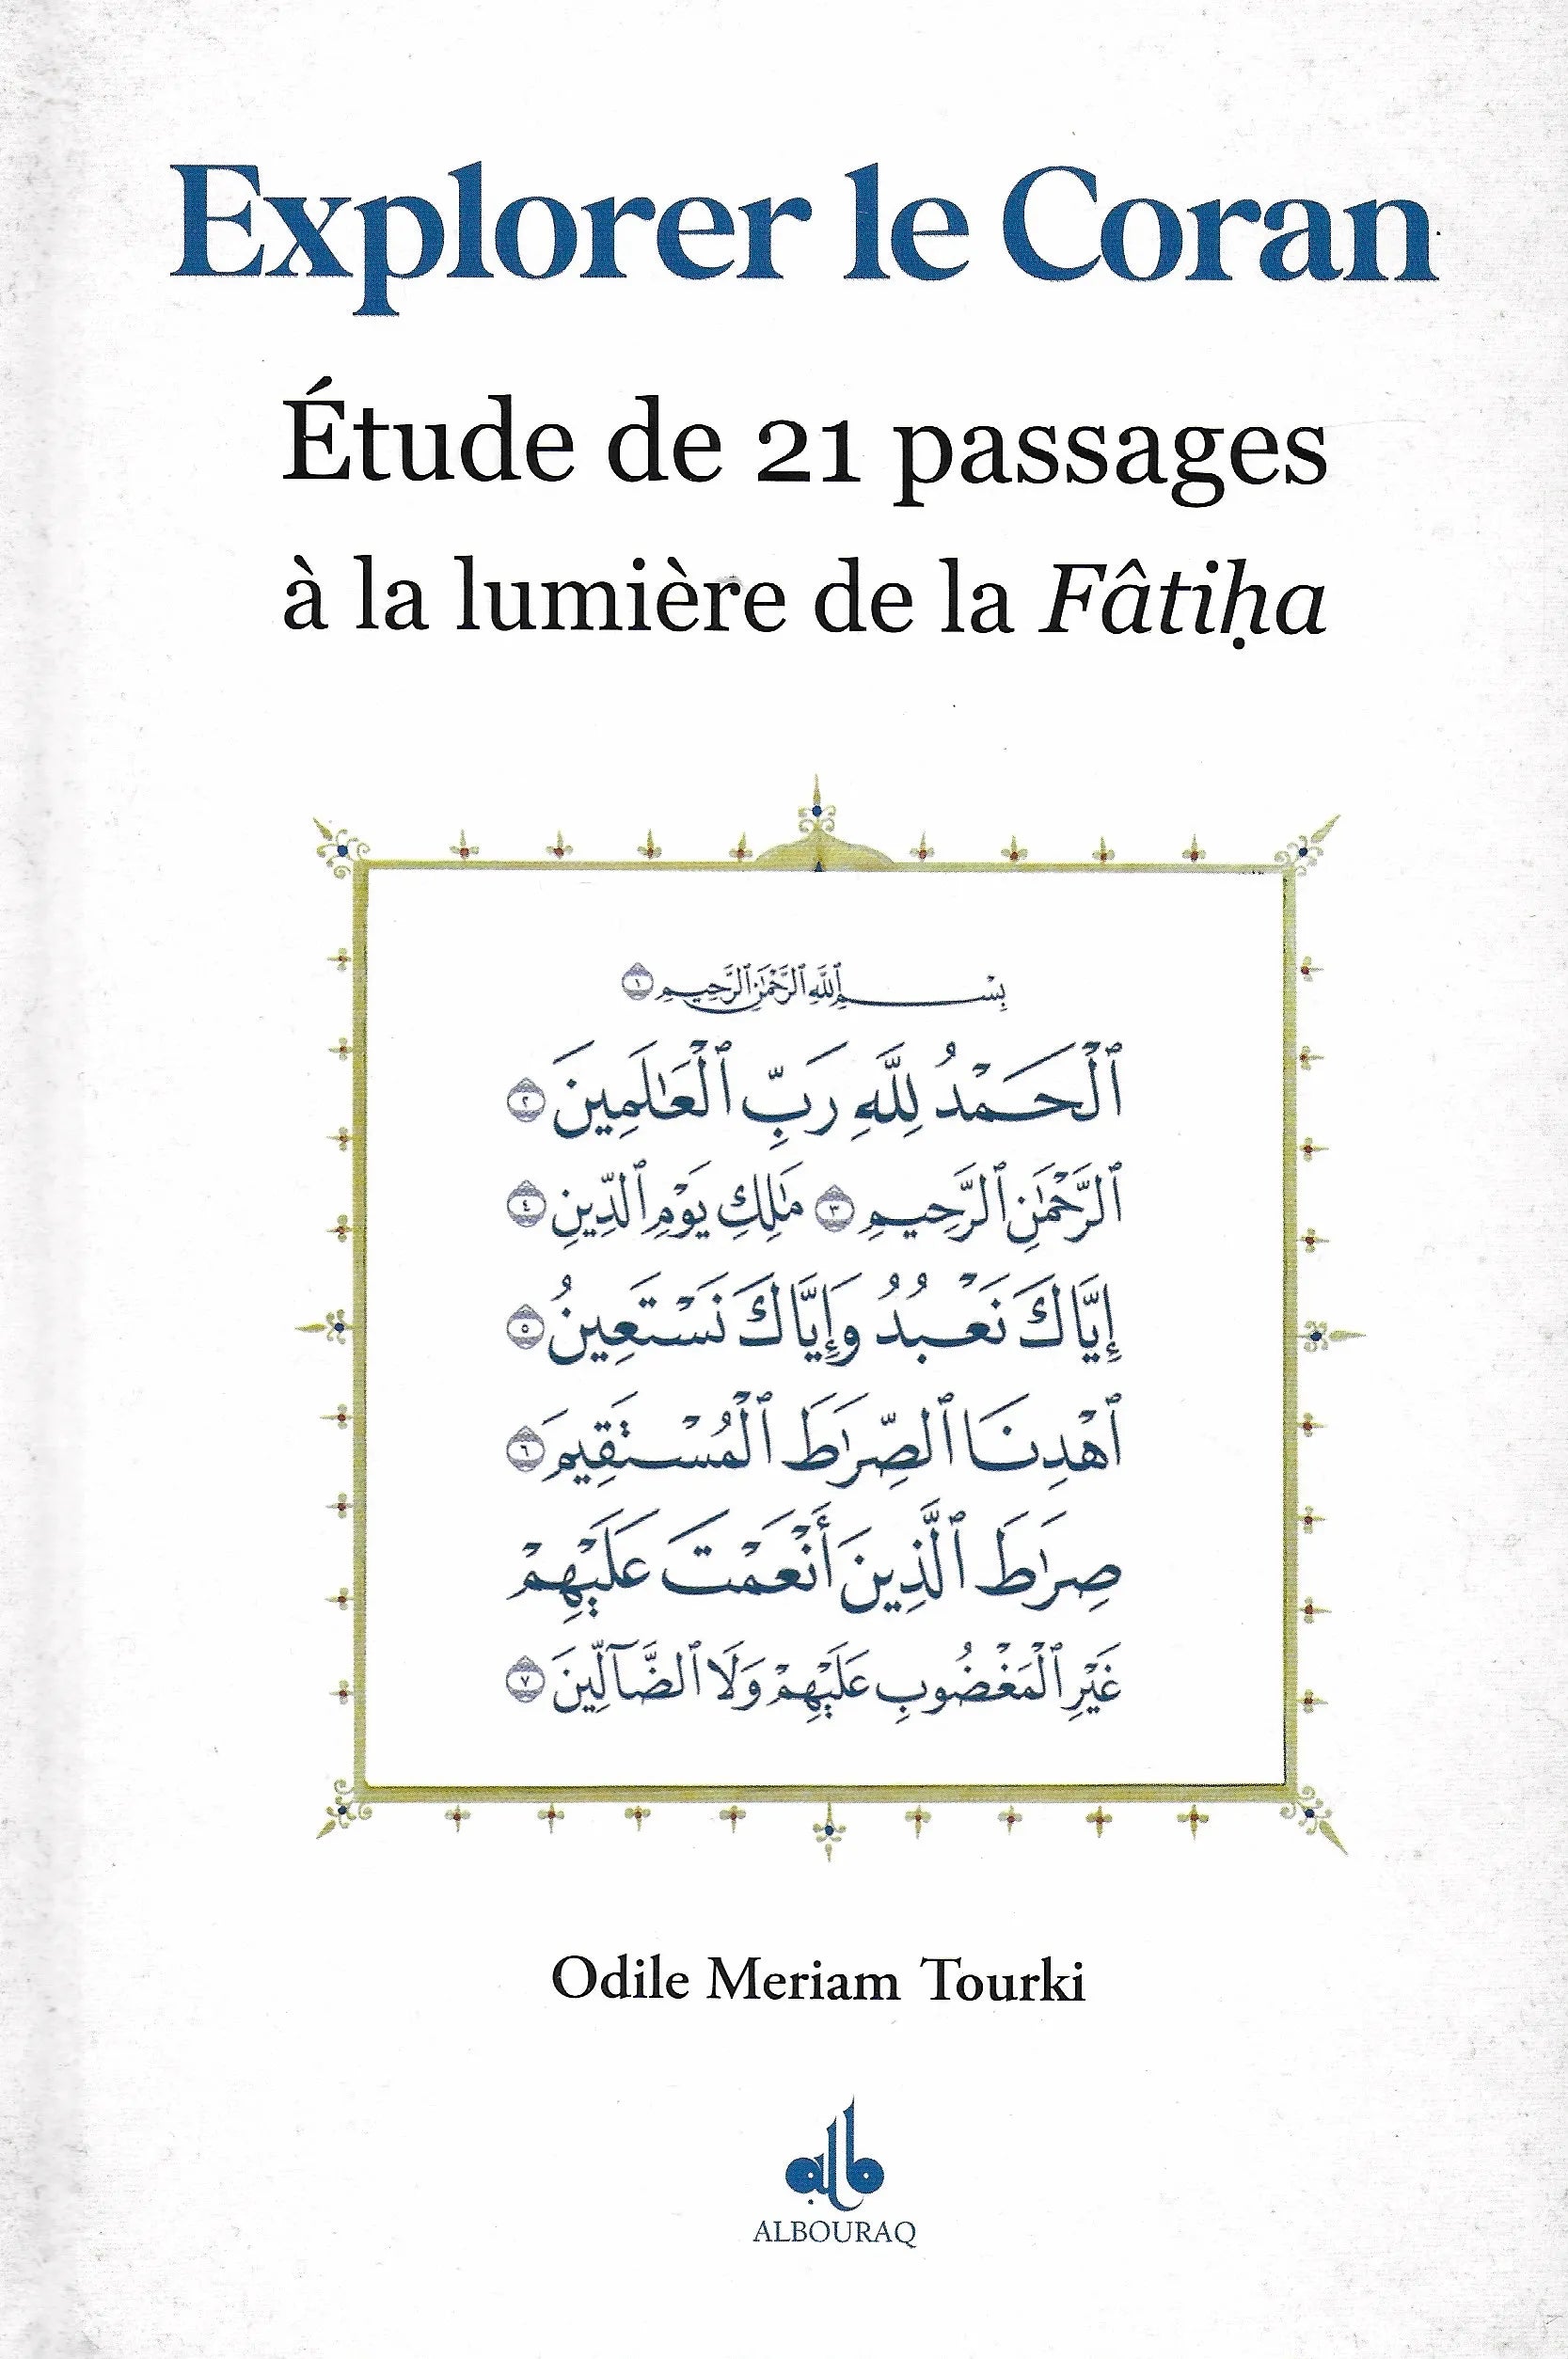 Explorer le Coran - Étude de 21 passages à la lumière de la Fâtiha par Odile Meriam Tourki - al Bouraq